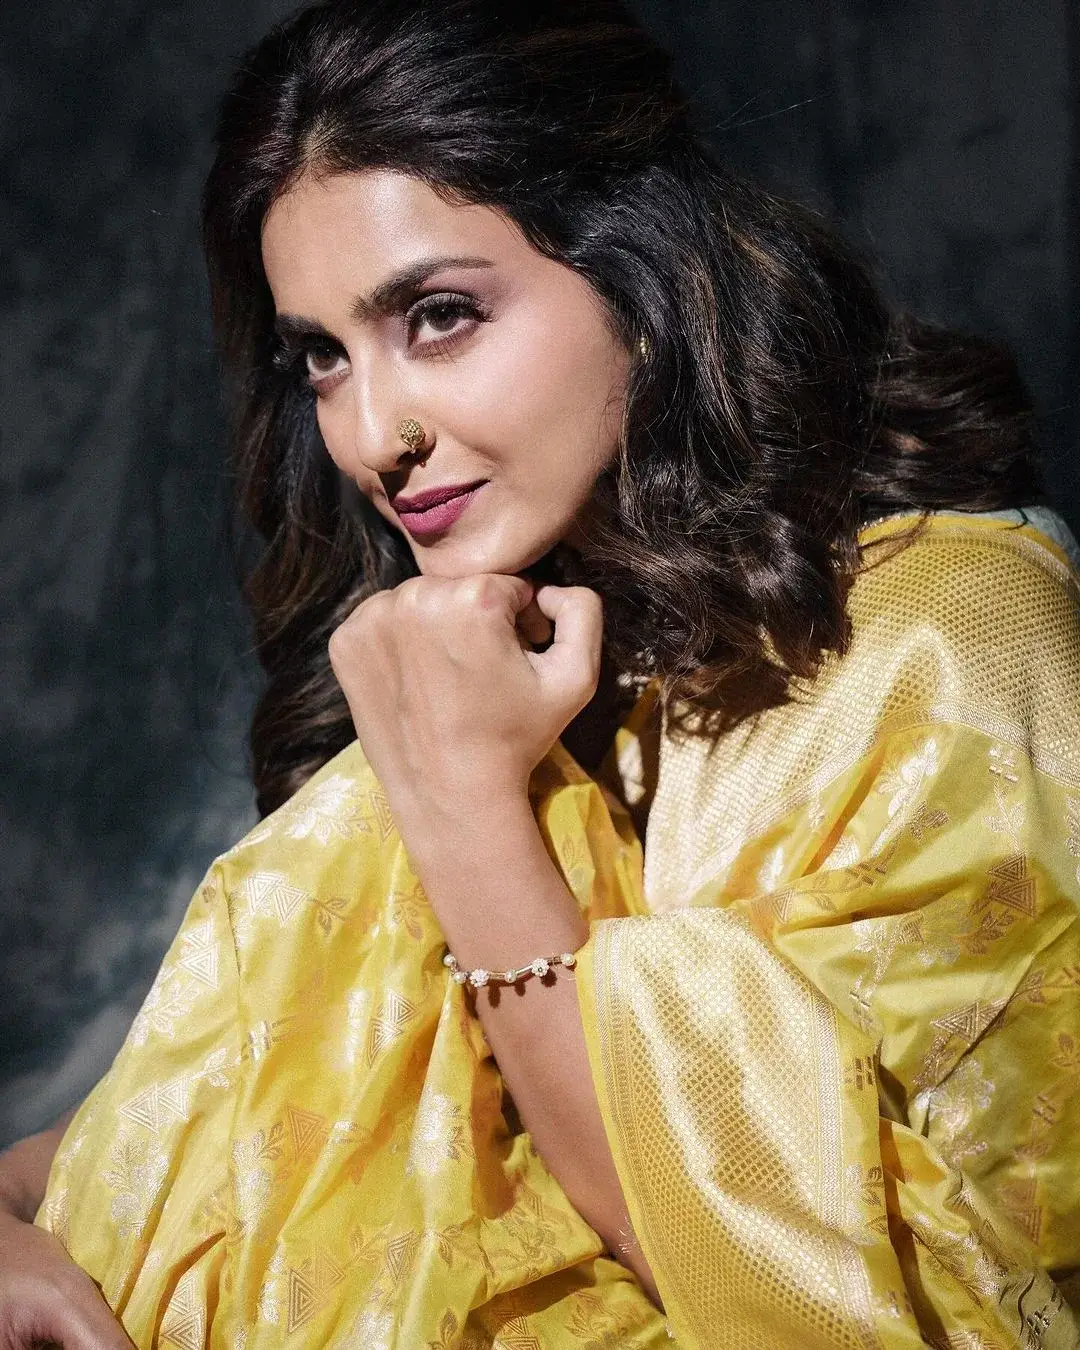 South Indian Actress Avantika Mishra in Yellow Saree